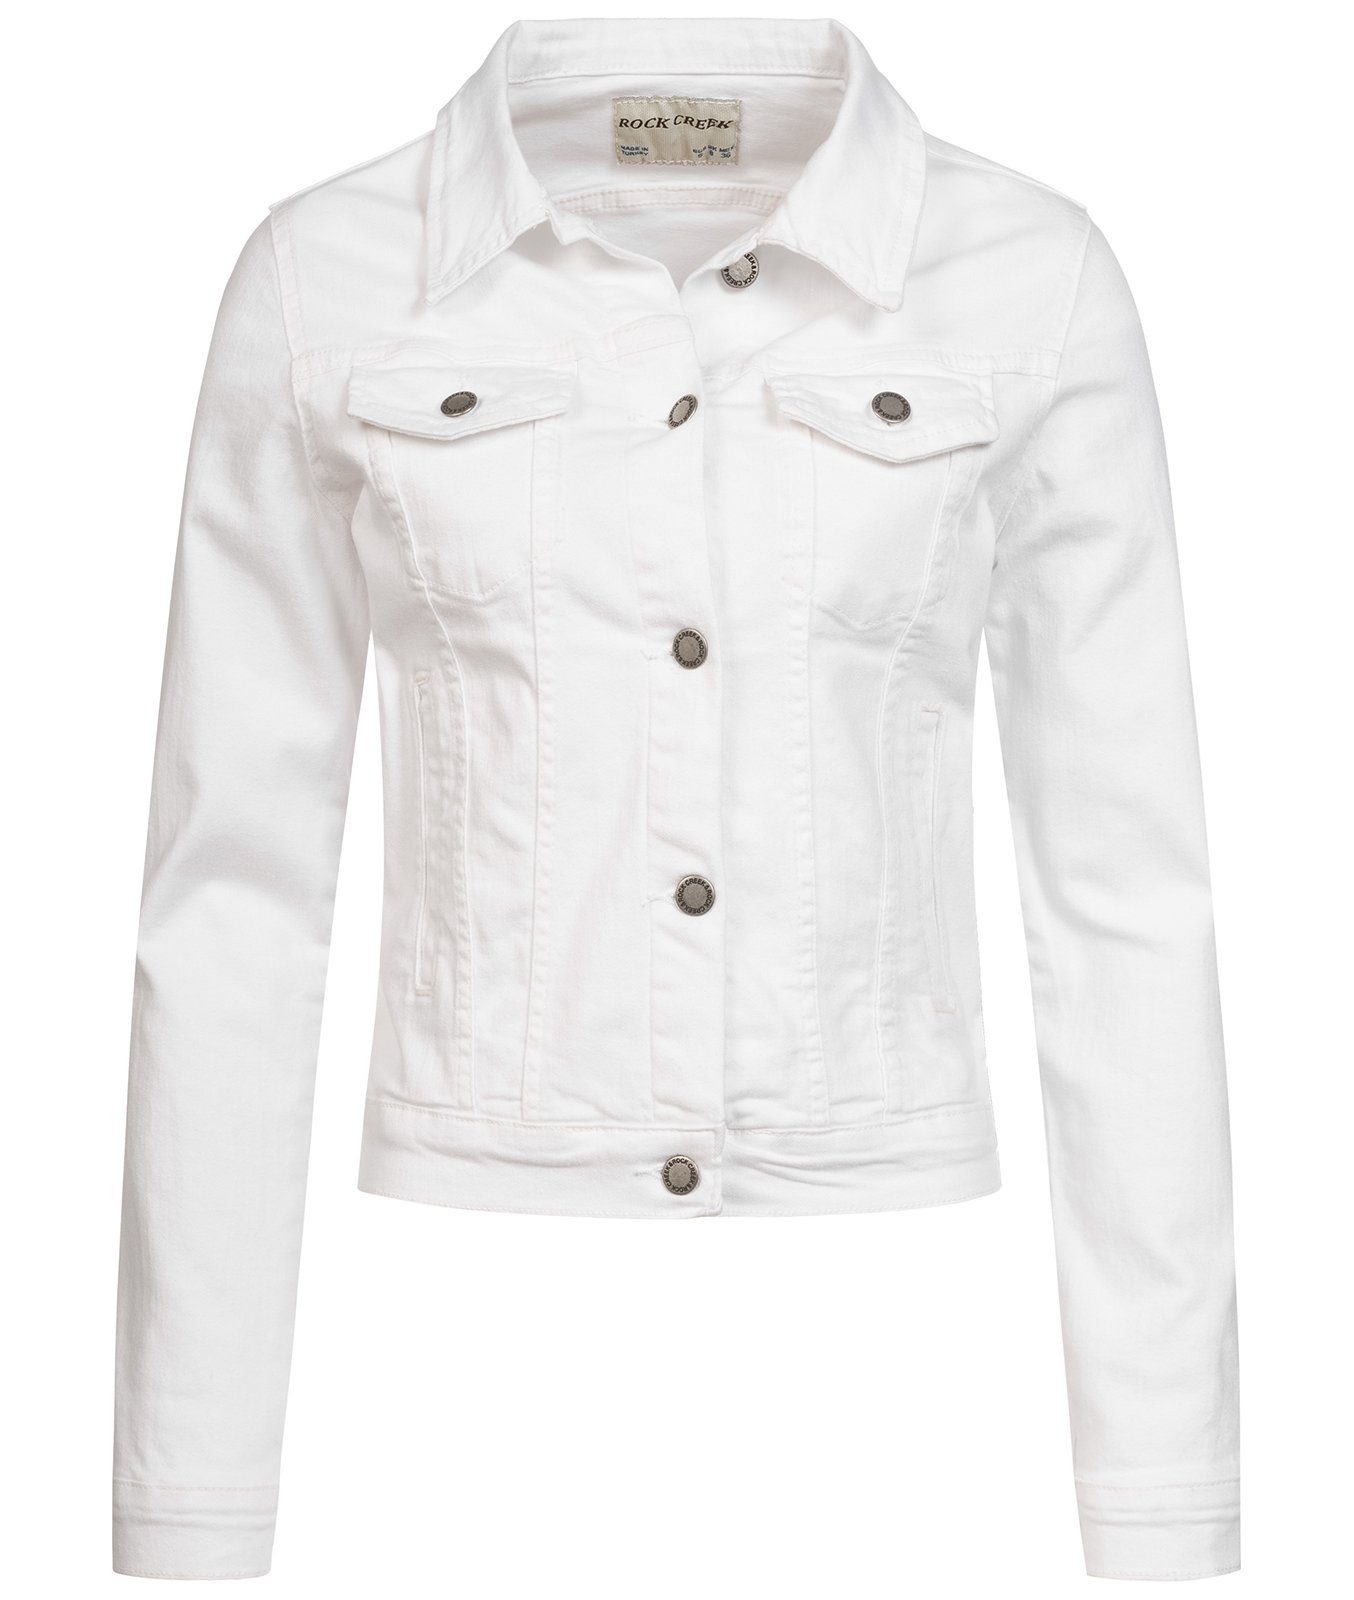 Weiße Jeansjacke online kaufen | OTTO